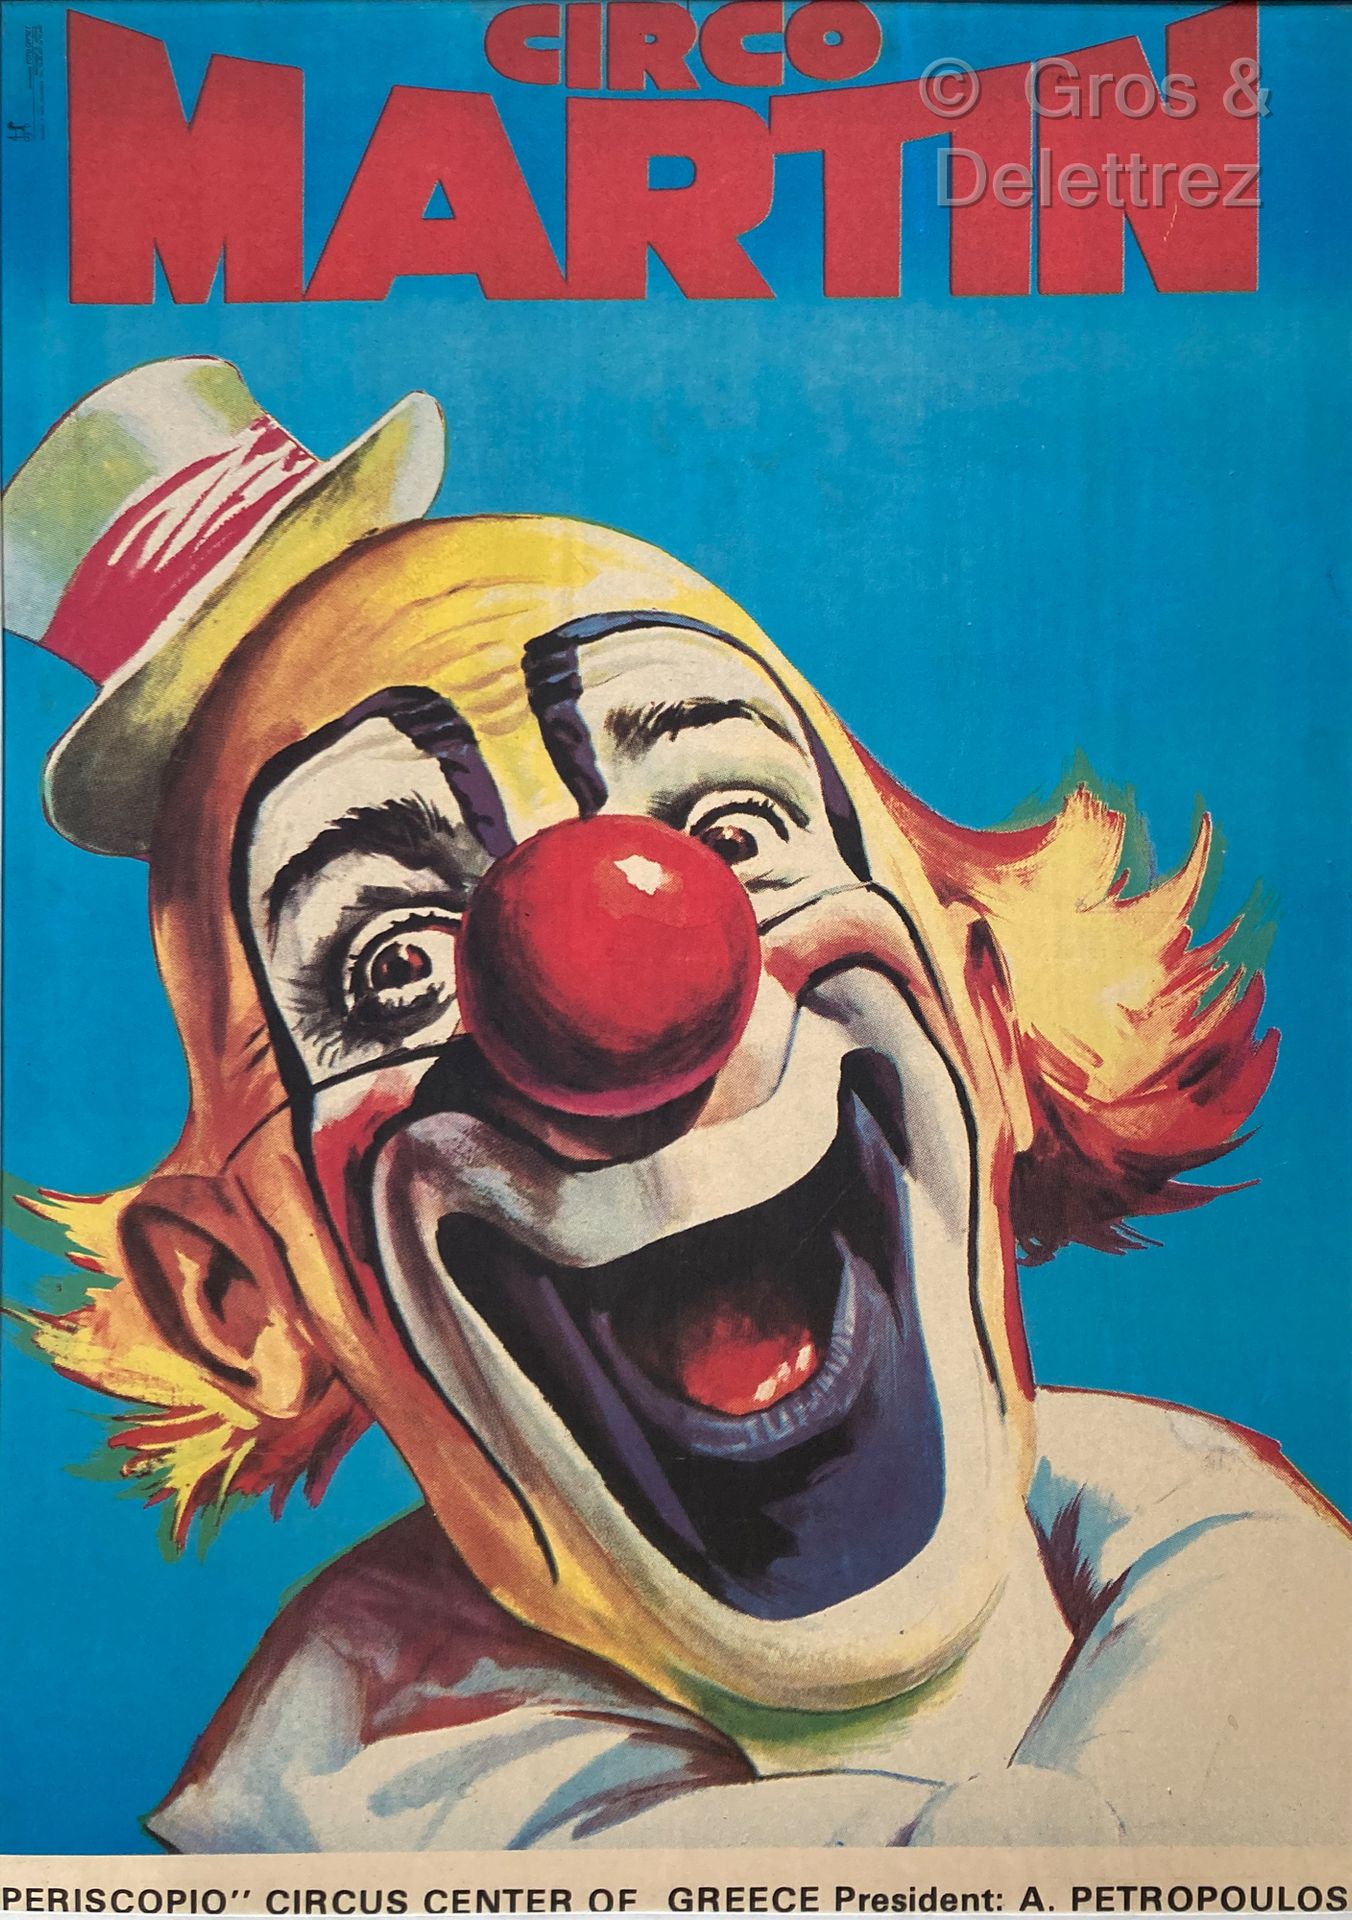 Null CIRCO MARTIN

Affiche de cirque représentant le clown Auguste

97 x 68 cm